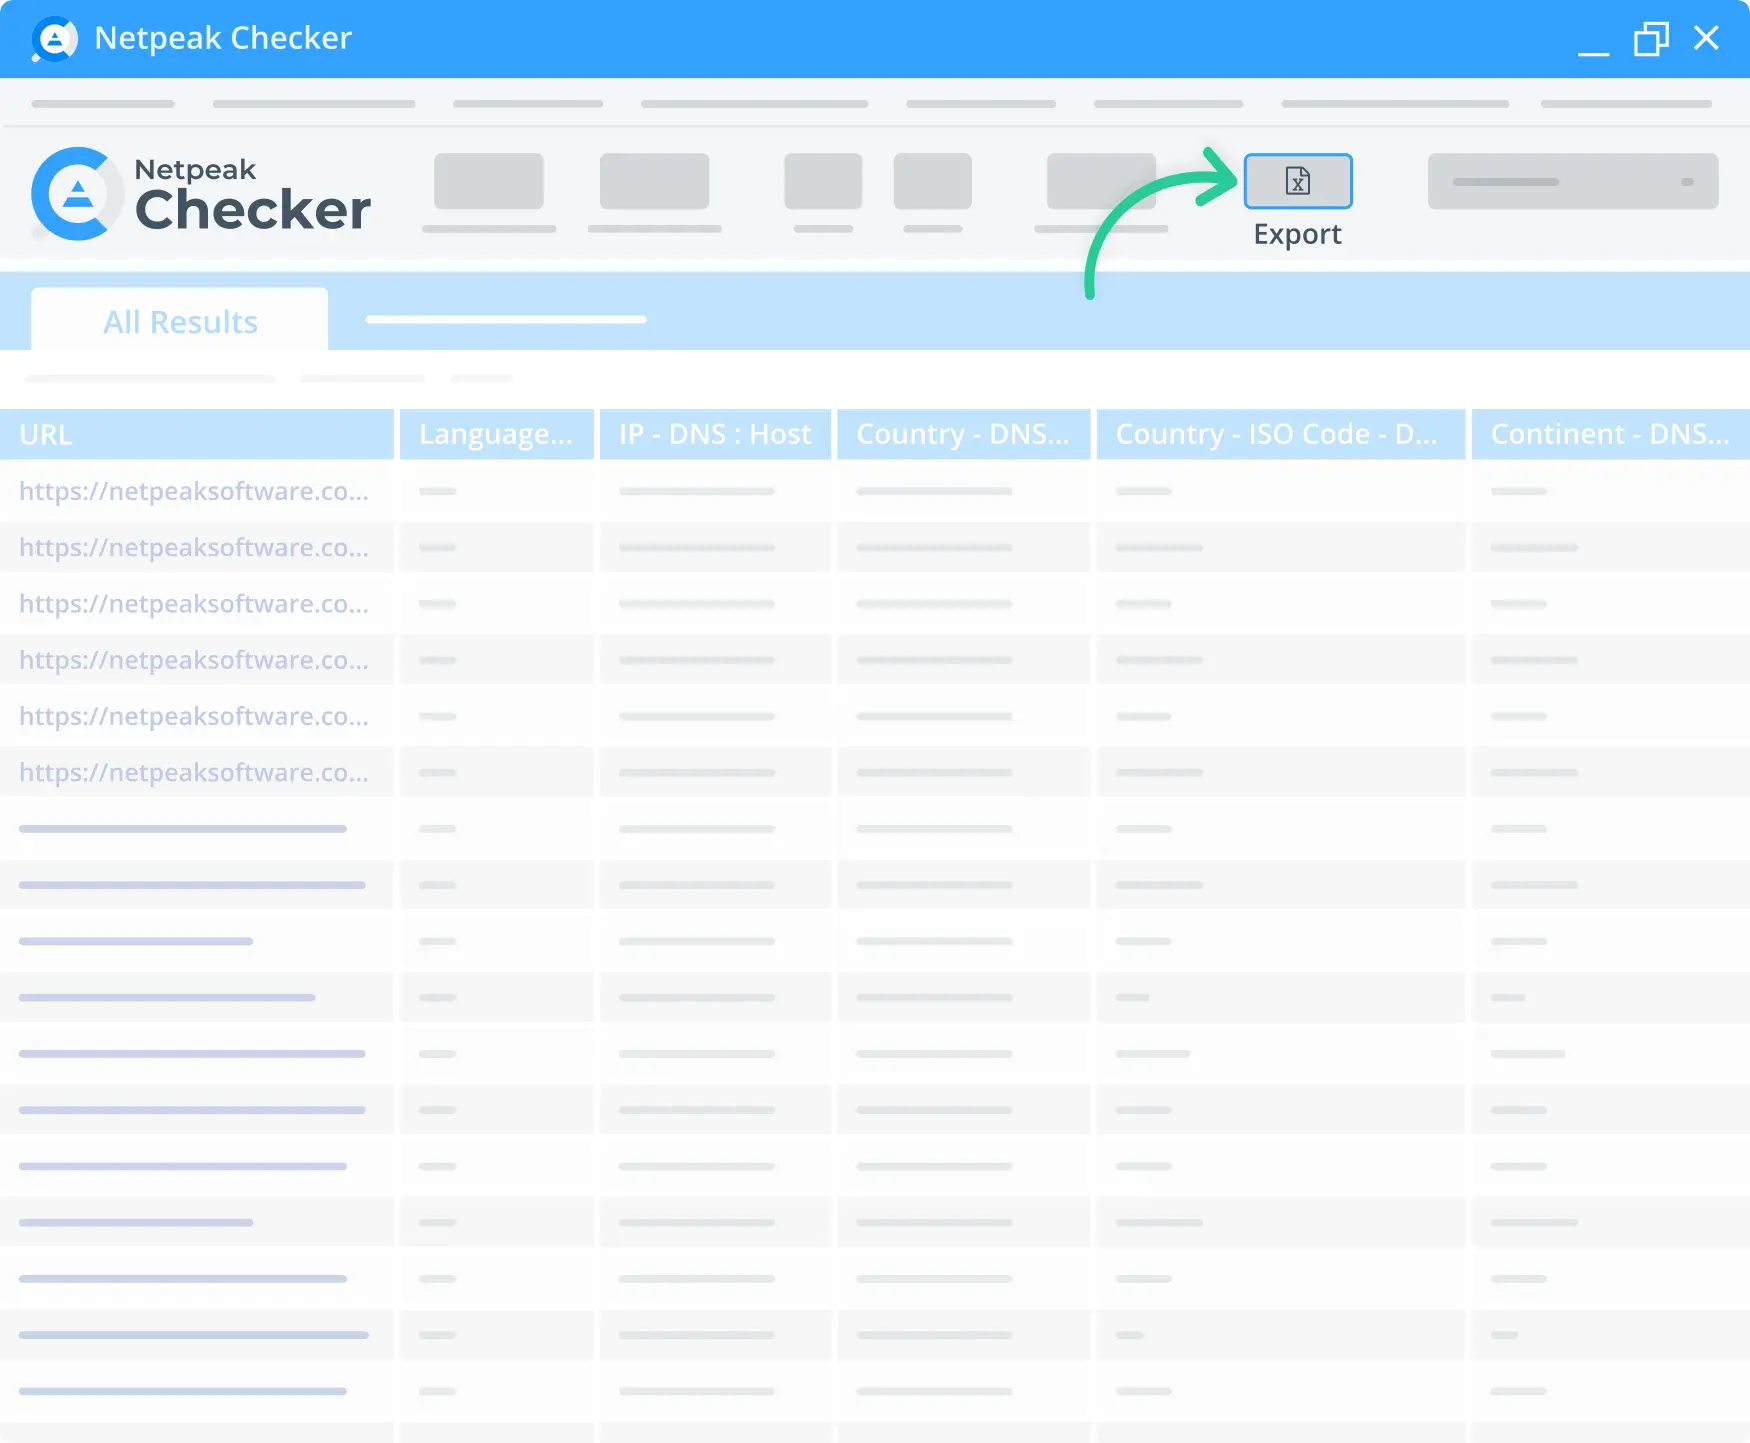  Ви можете завантажити звіт аналізу з програми Netpeak Checker всього за кілька хвилин.